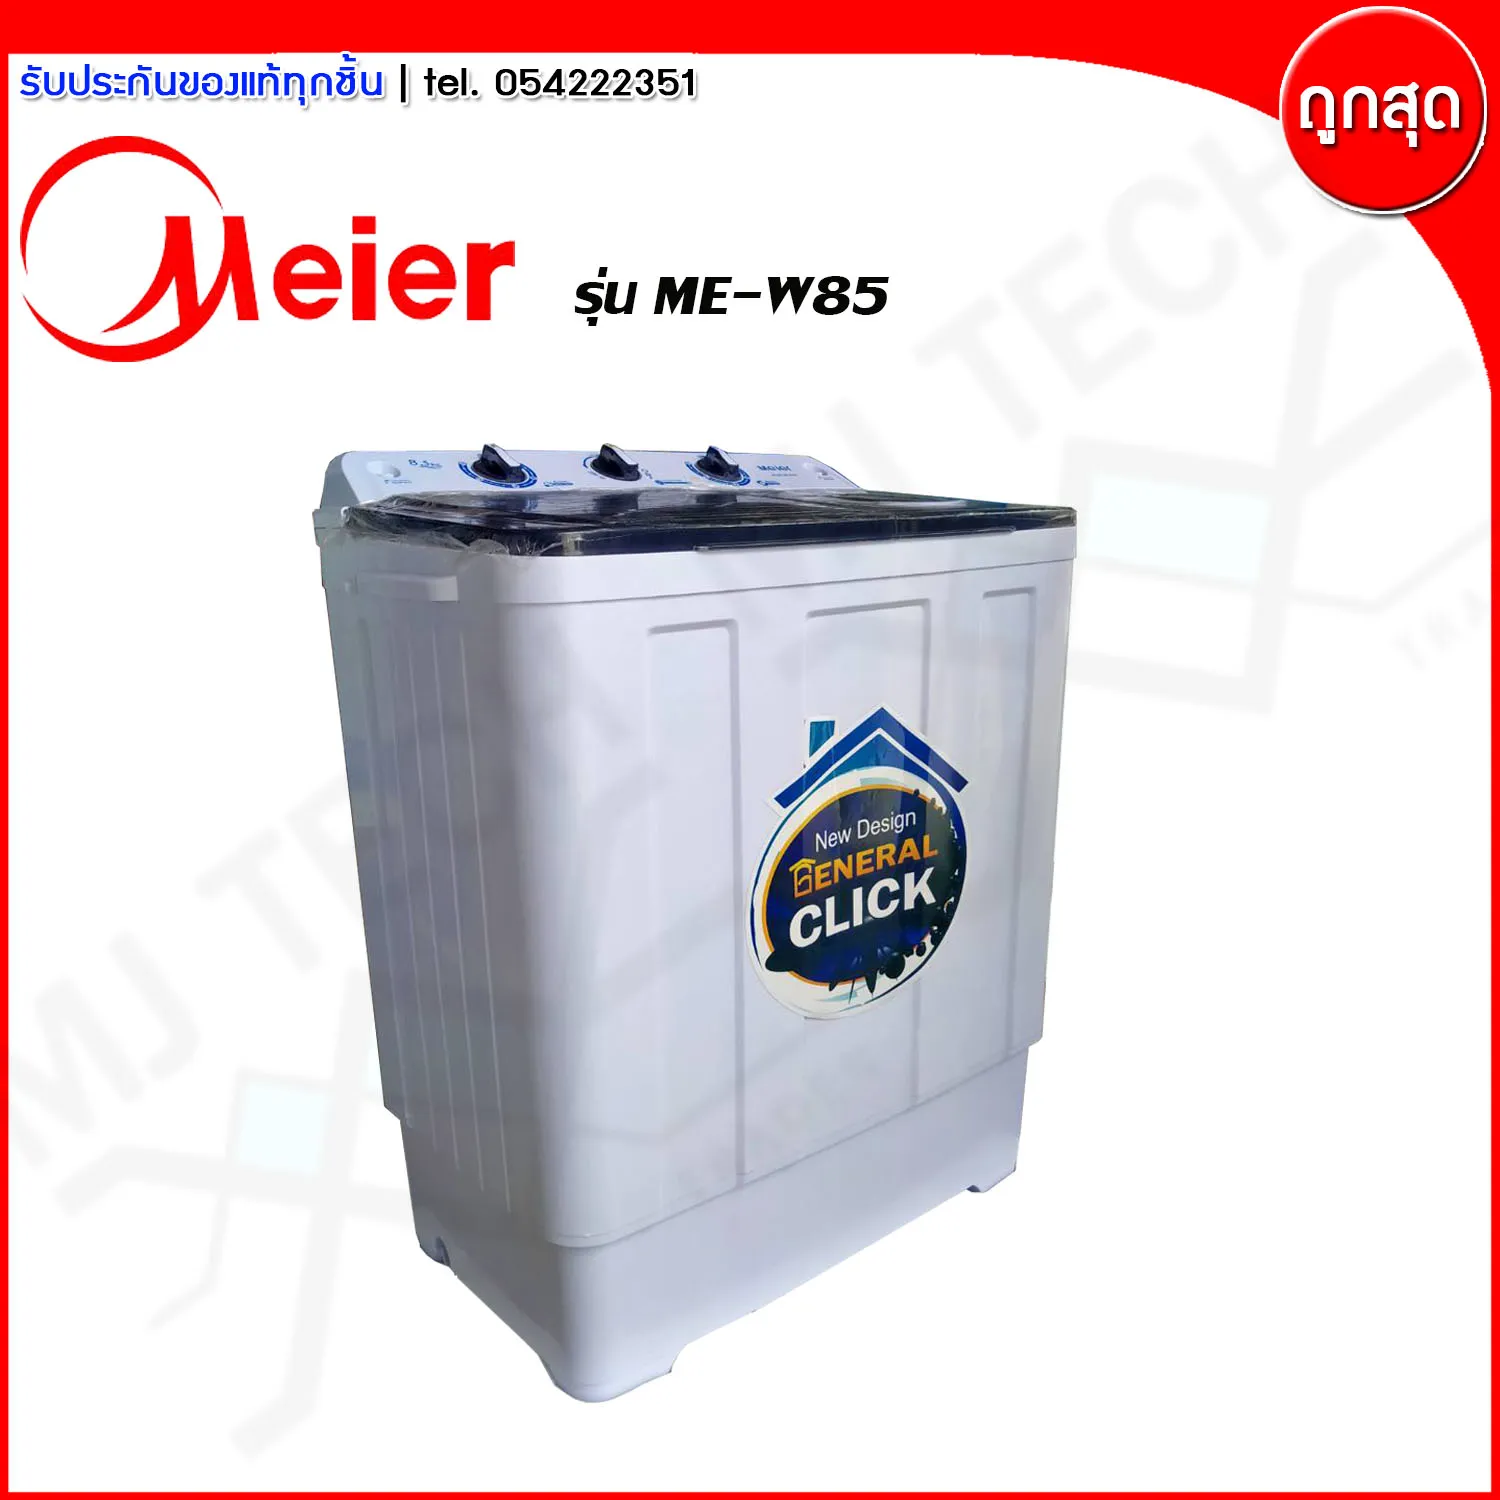 เครื่องซักผ้า Meier 2 ถัง ฝาบน ขนาด 8.5 กก  รุ่น ME-W85 (ส่งฟรีทั่วไทย)